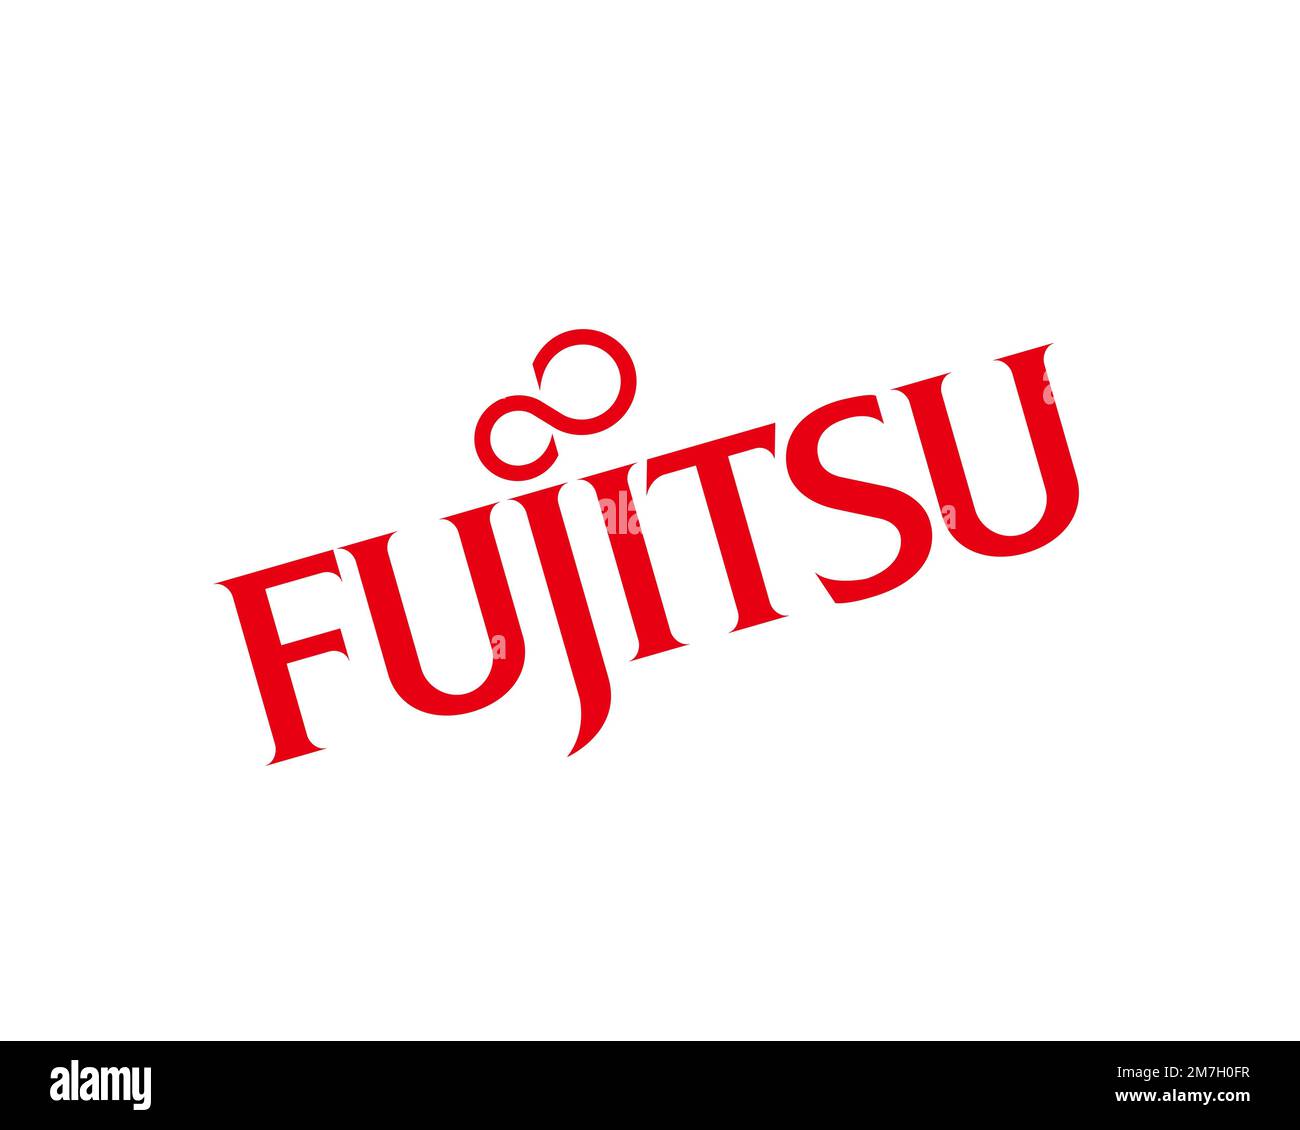 Fujitsu, rotated logo, white background Stock Photo